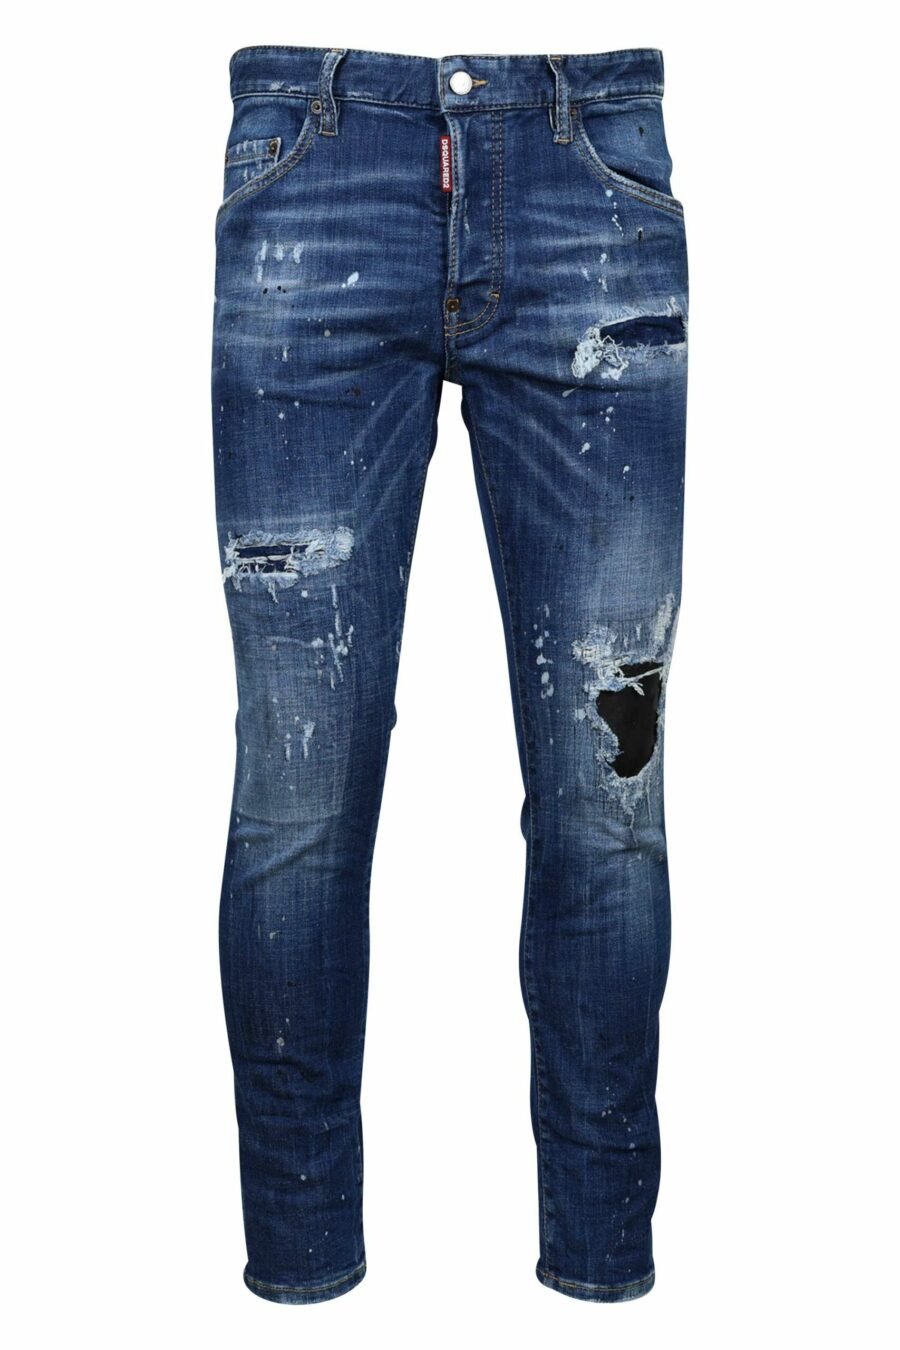 Blaue "Skater-Jeans" mit Rissen und ausgefranst - 8054148124687 1 skaliert